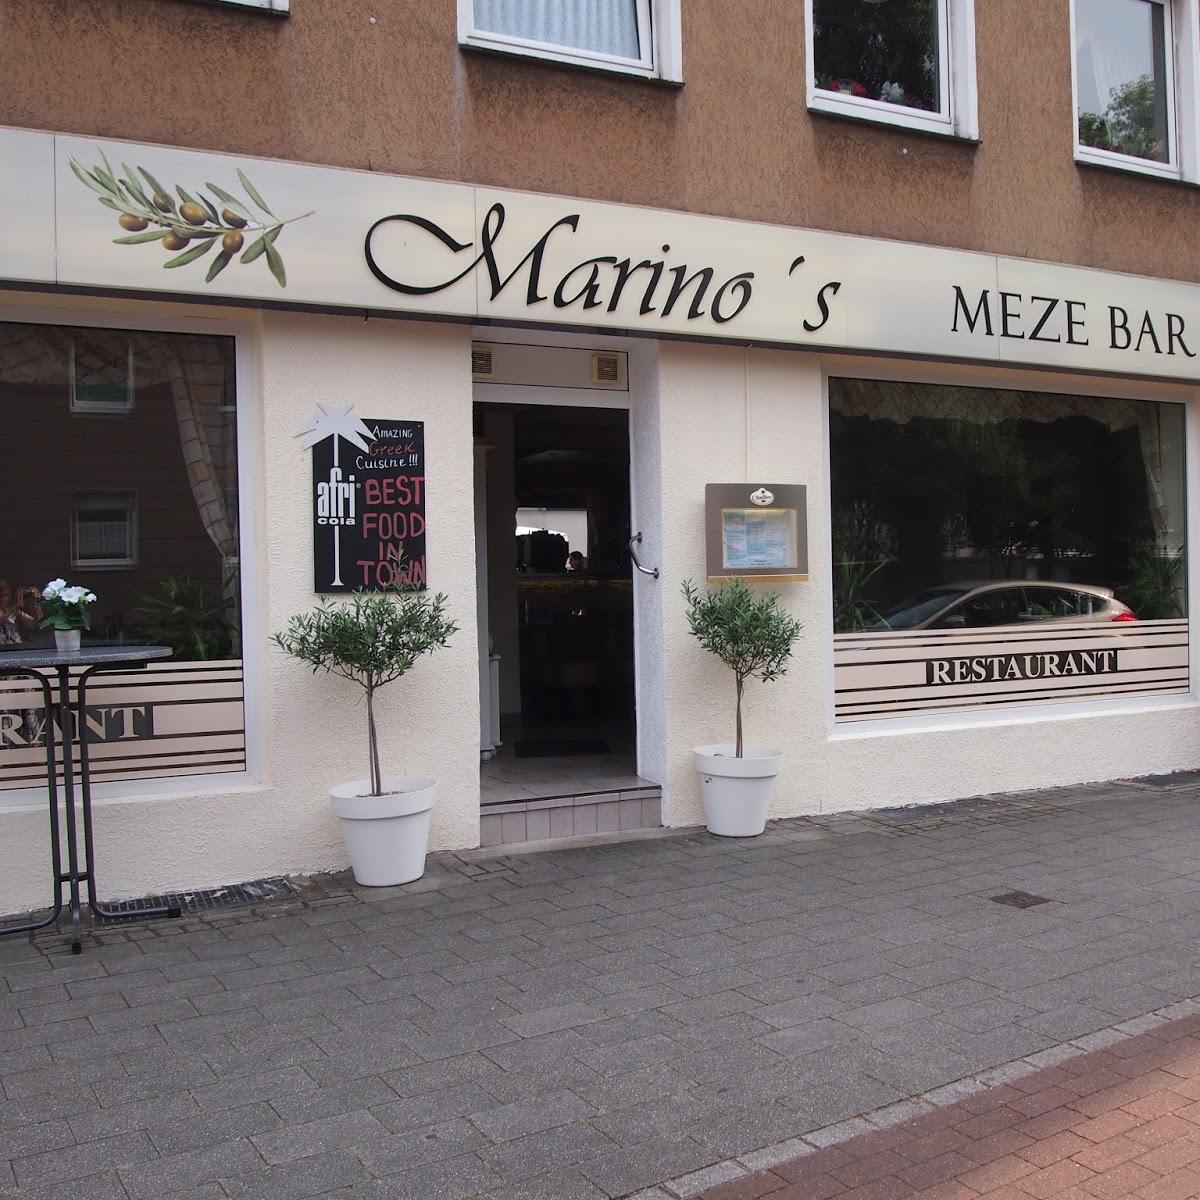 Restaurant "Marino